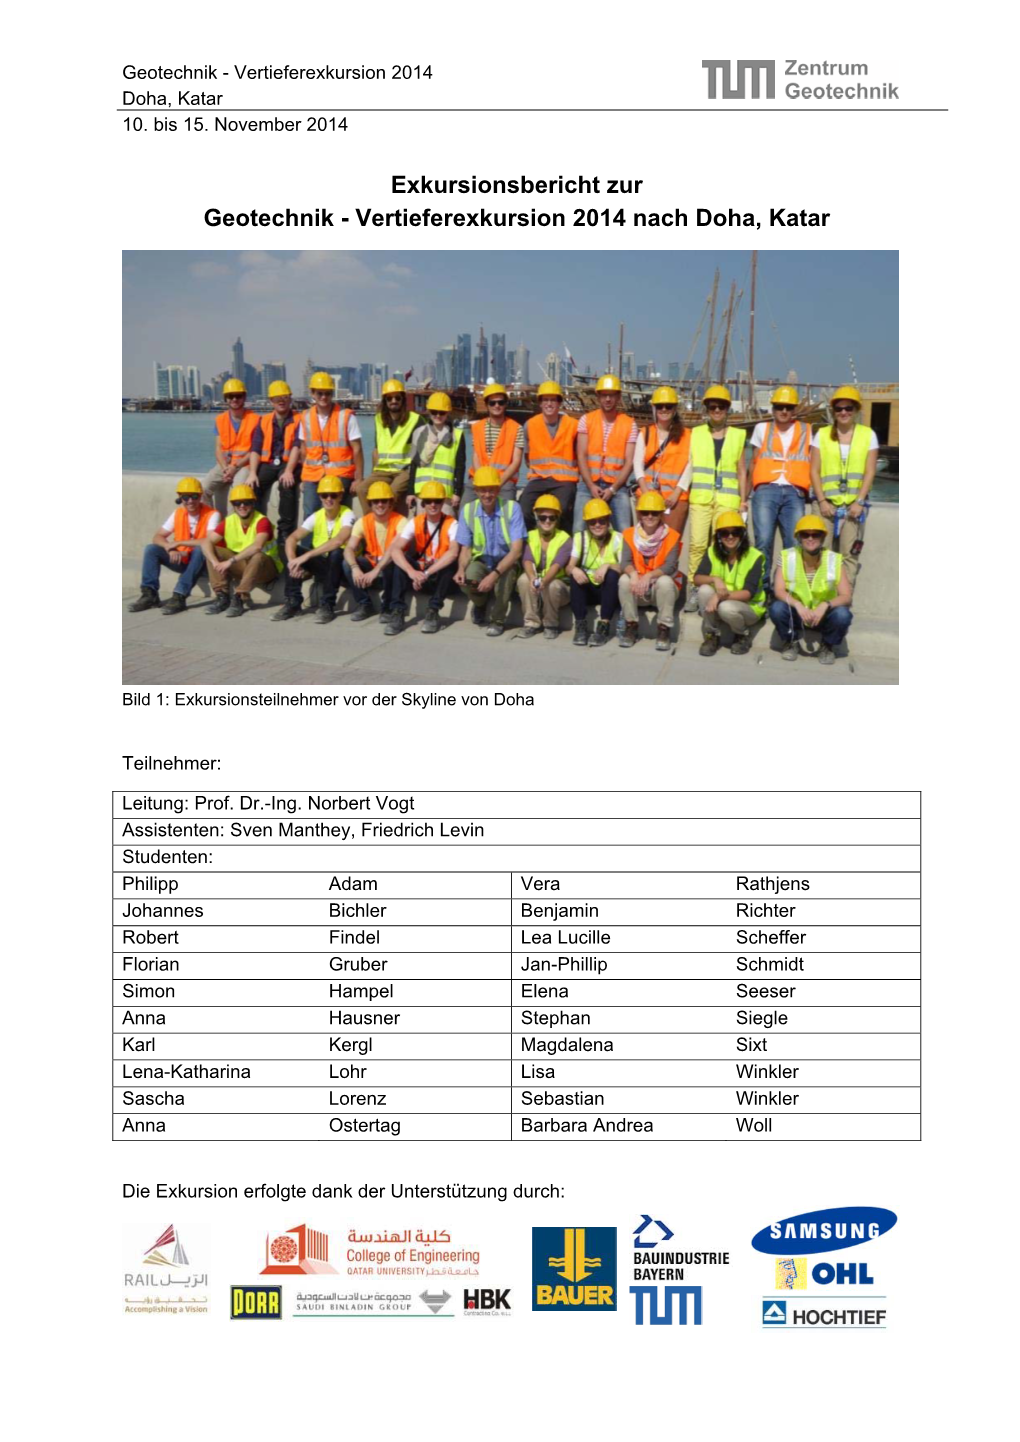 Exkursionsbericht Zur Geotechnik - Vertieferexkursion 2014 Nach Doha, Katar